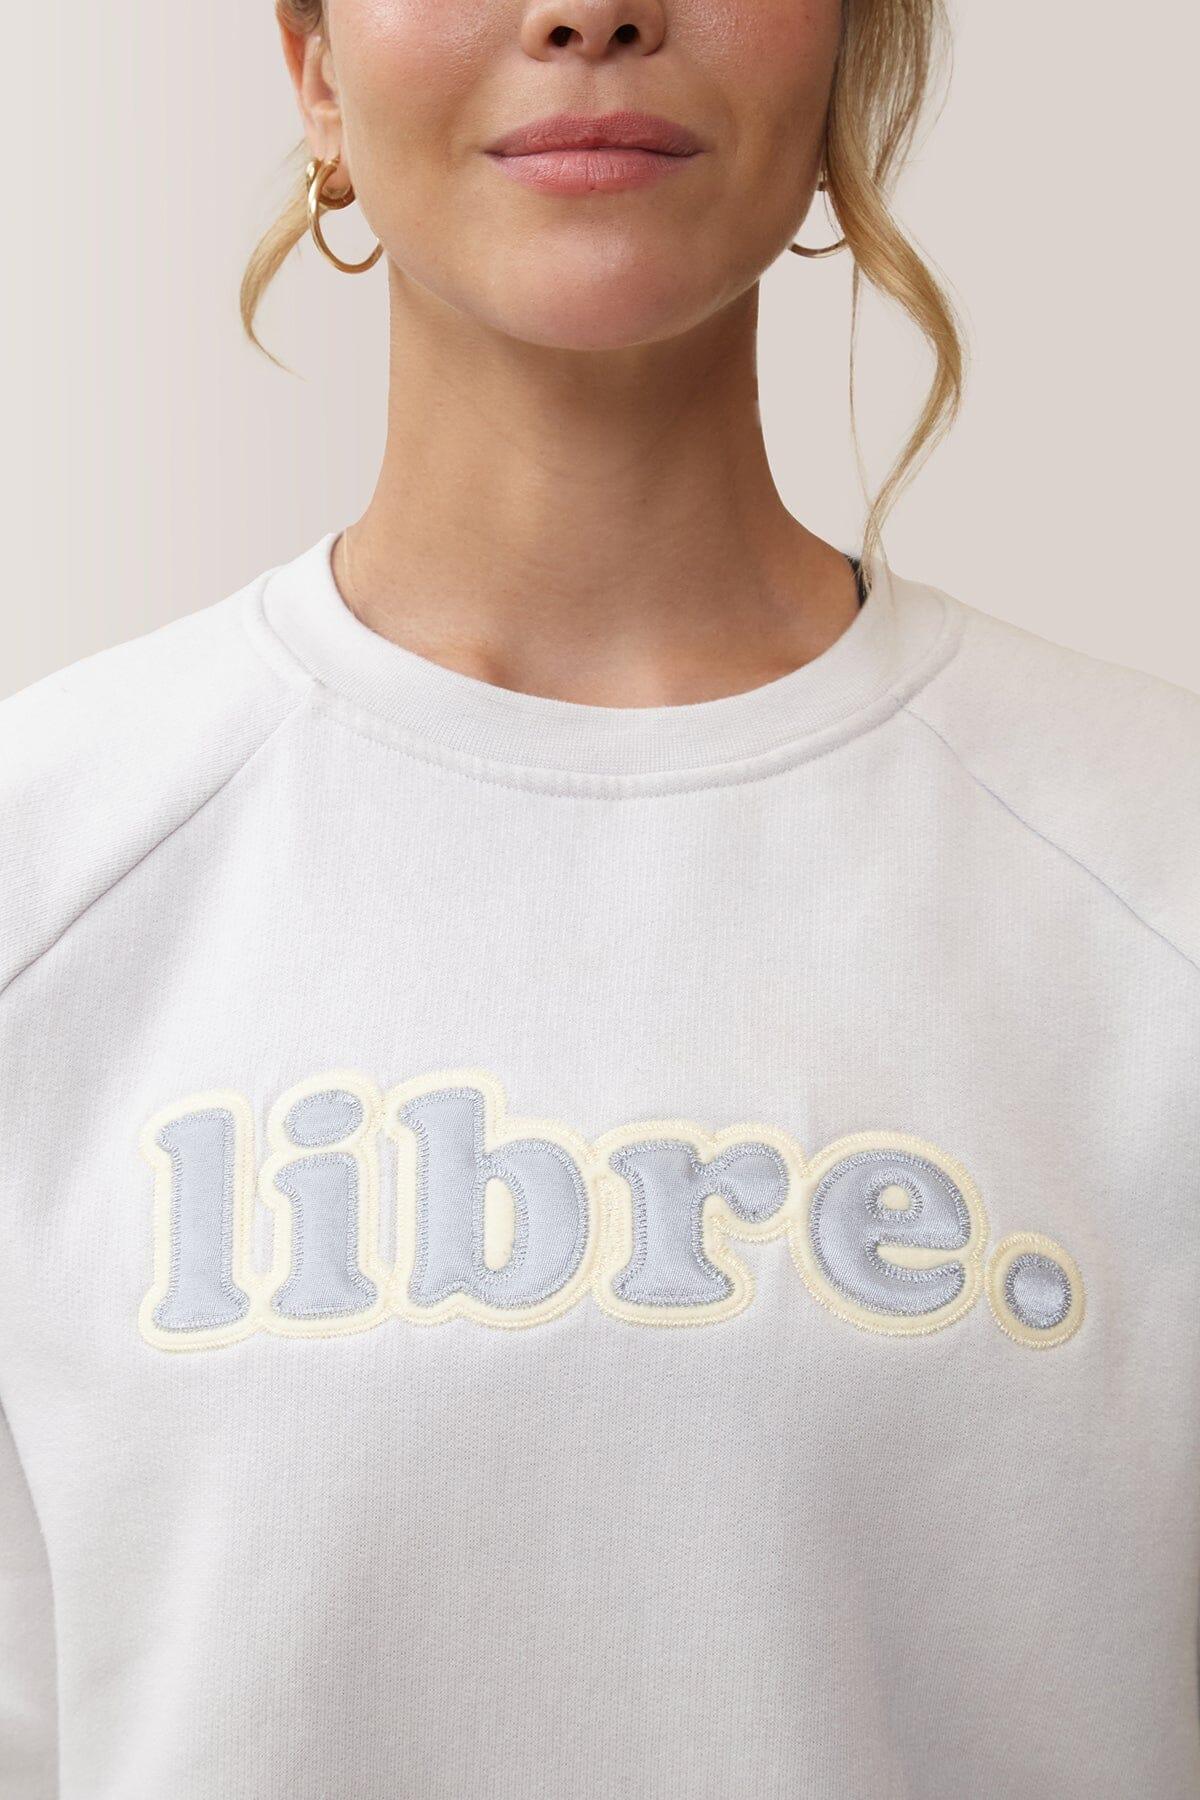 Femme qui porte le chandail LIBRE de Rose Boreal./ Women wearing the LIBRE Boyfriend Sweater by Rose Boreal. -Greige